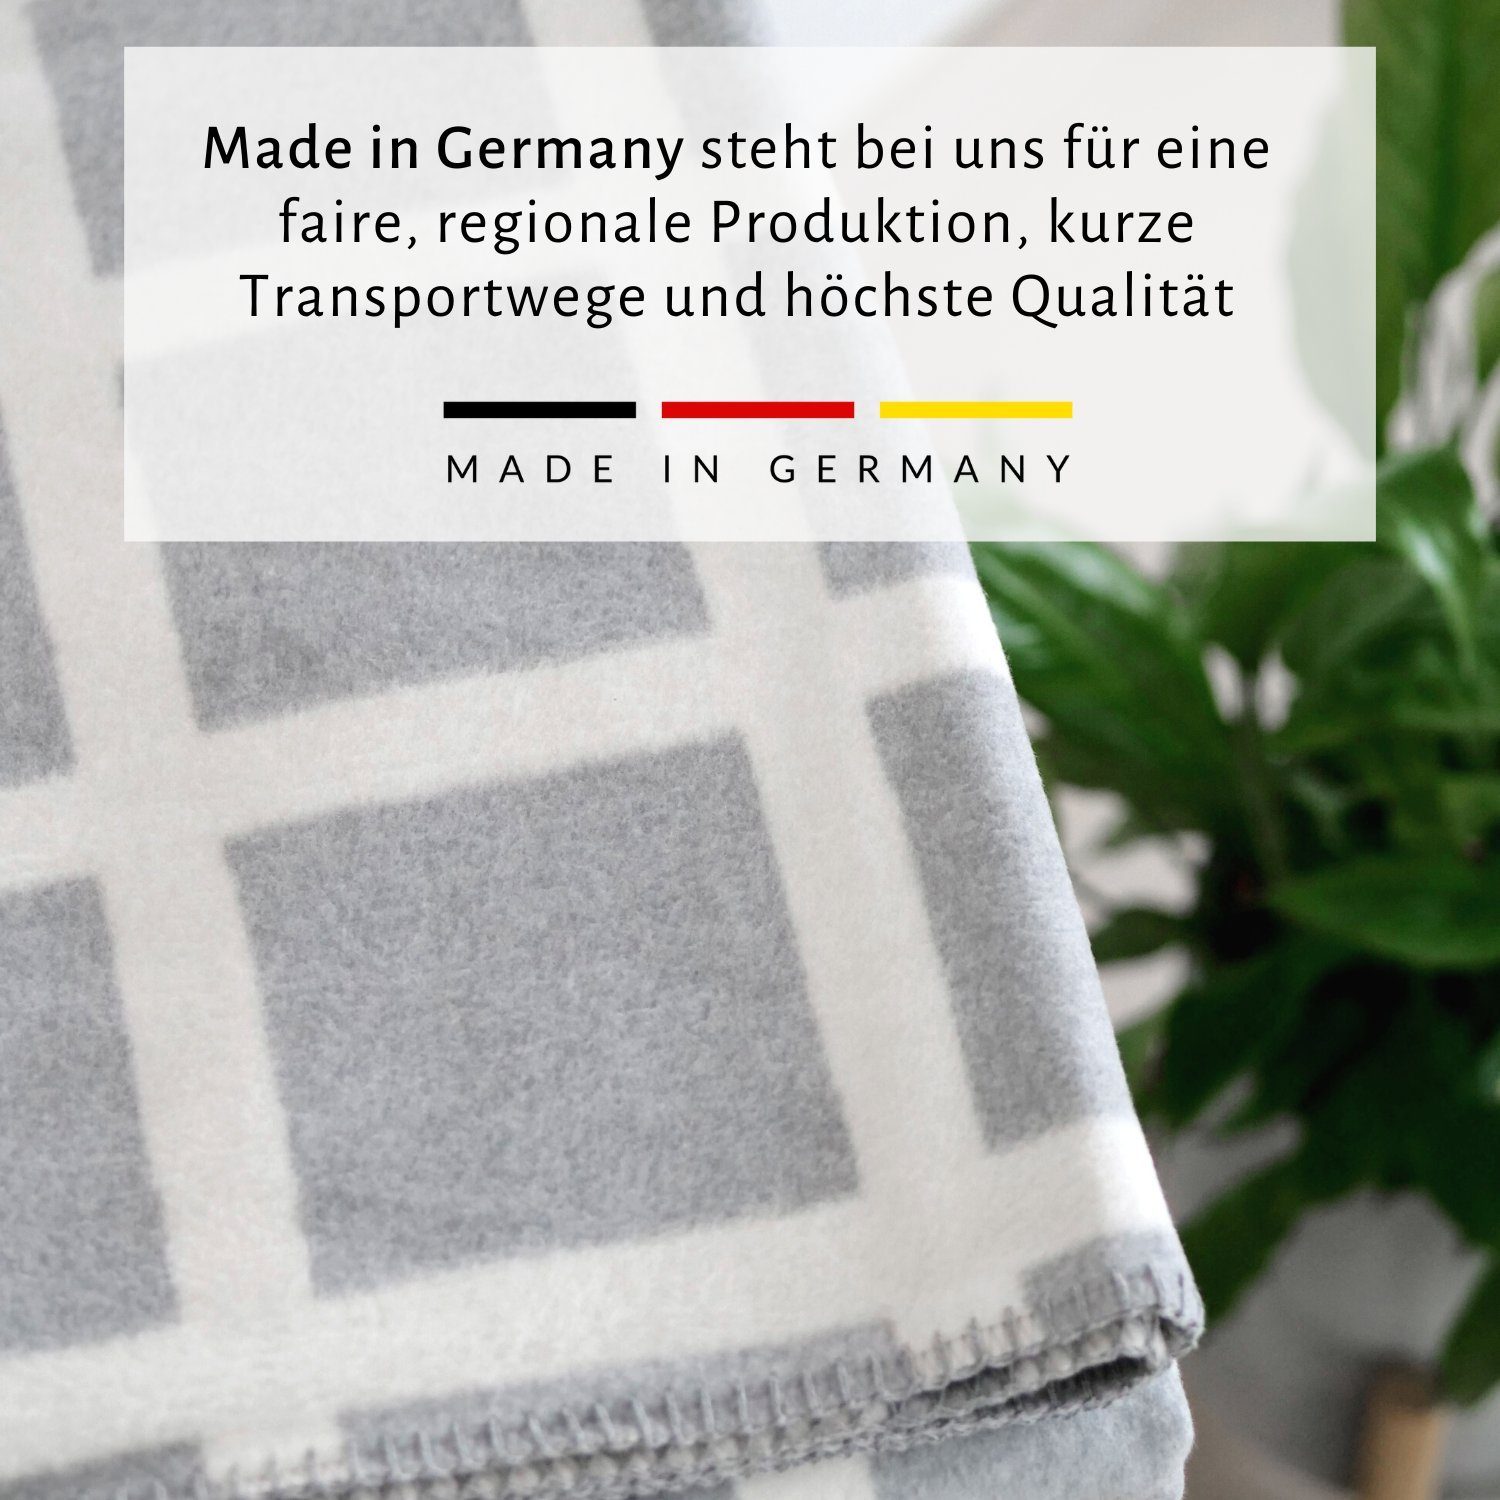 Wohndecke weiche Baumwolldecke Made in Germany, RIEMA Kuscheldecke, grau Sofadecke Germany, Baumwolle ÖKOTEX aus nachhaltige recycelter nachhaltig